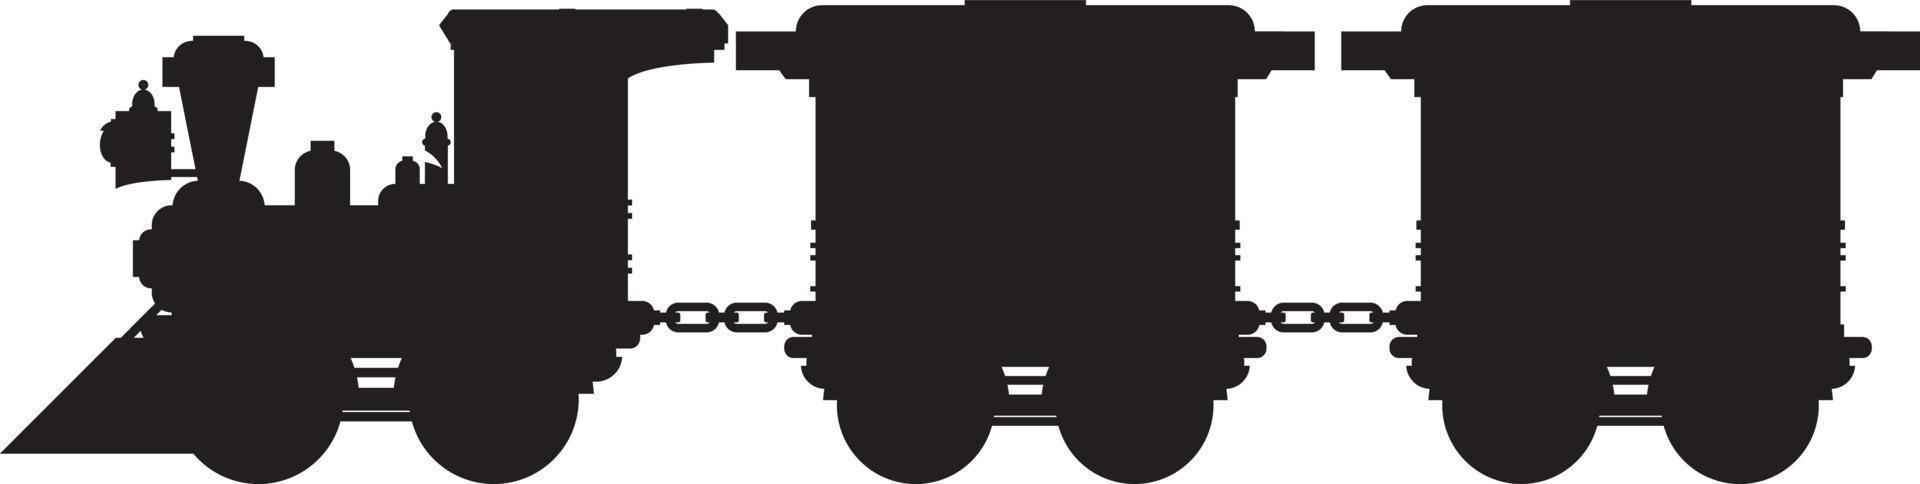 Retro Wild West Steam Train in Silhouette vector